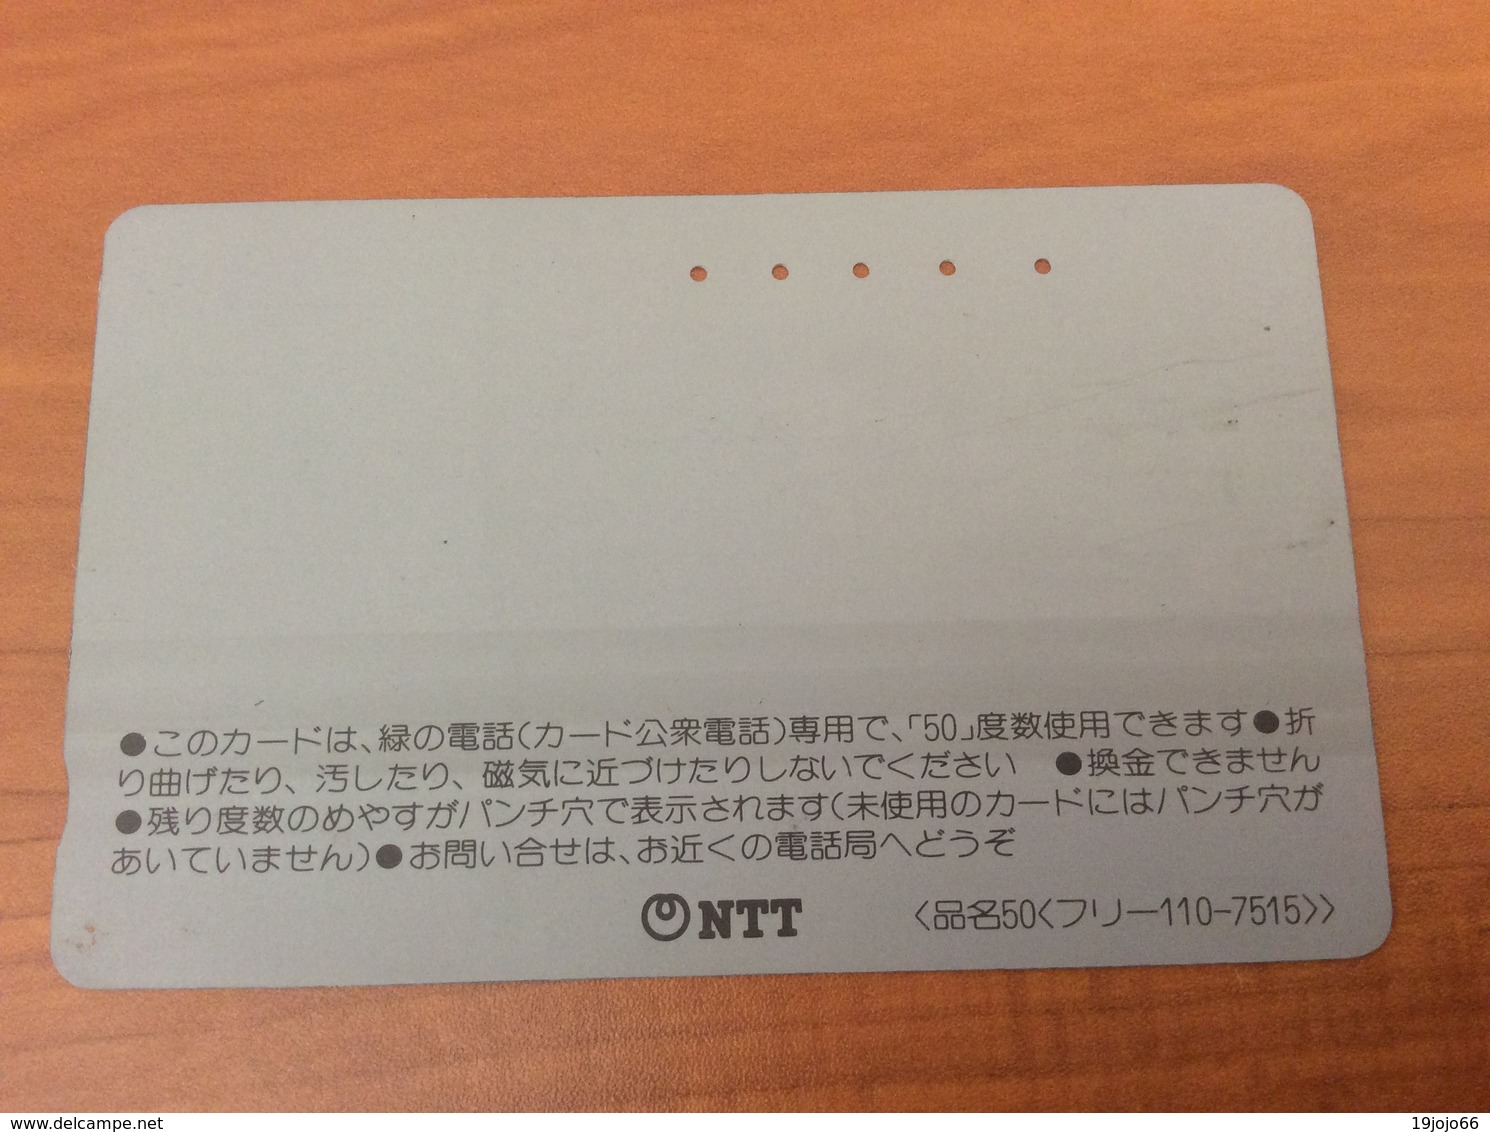 Telecarte Japon - Comic Horse- Balkenkarte / Front Bar Card Japan / Japonese  - Nr. 110-7515 - Japan